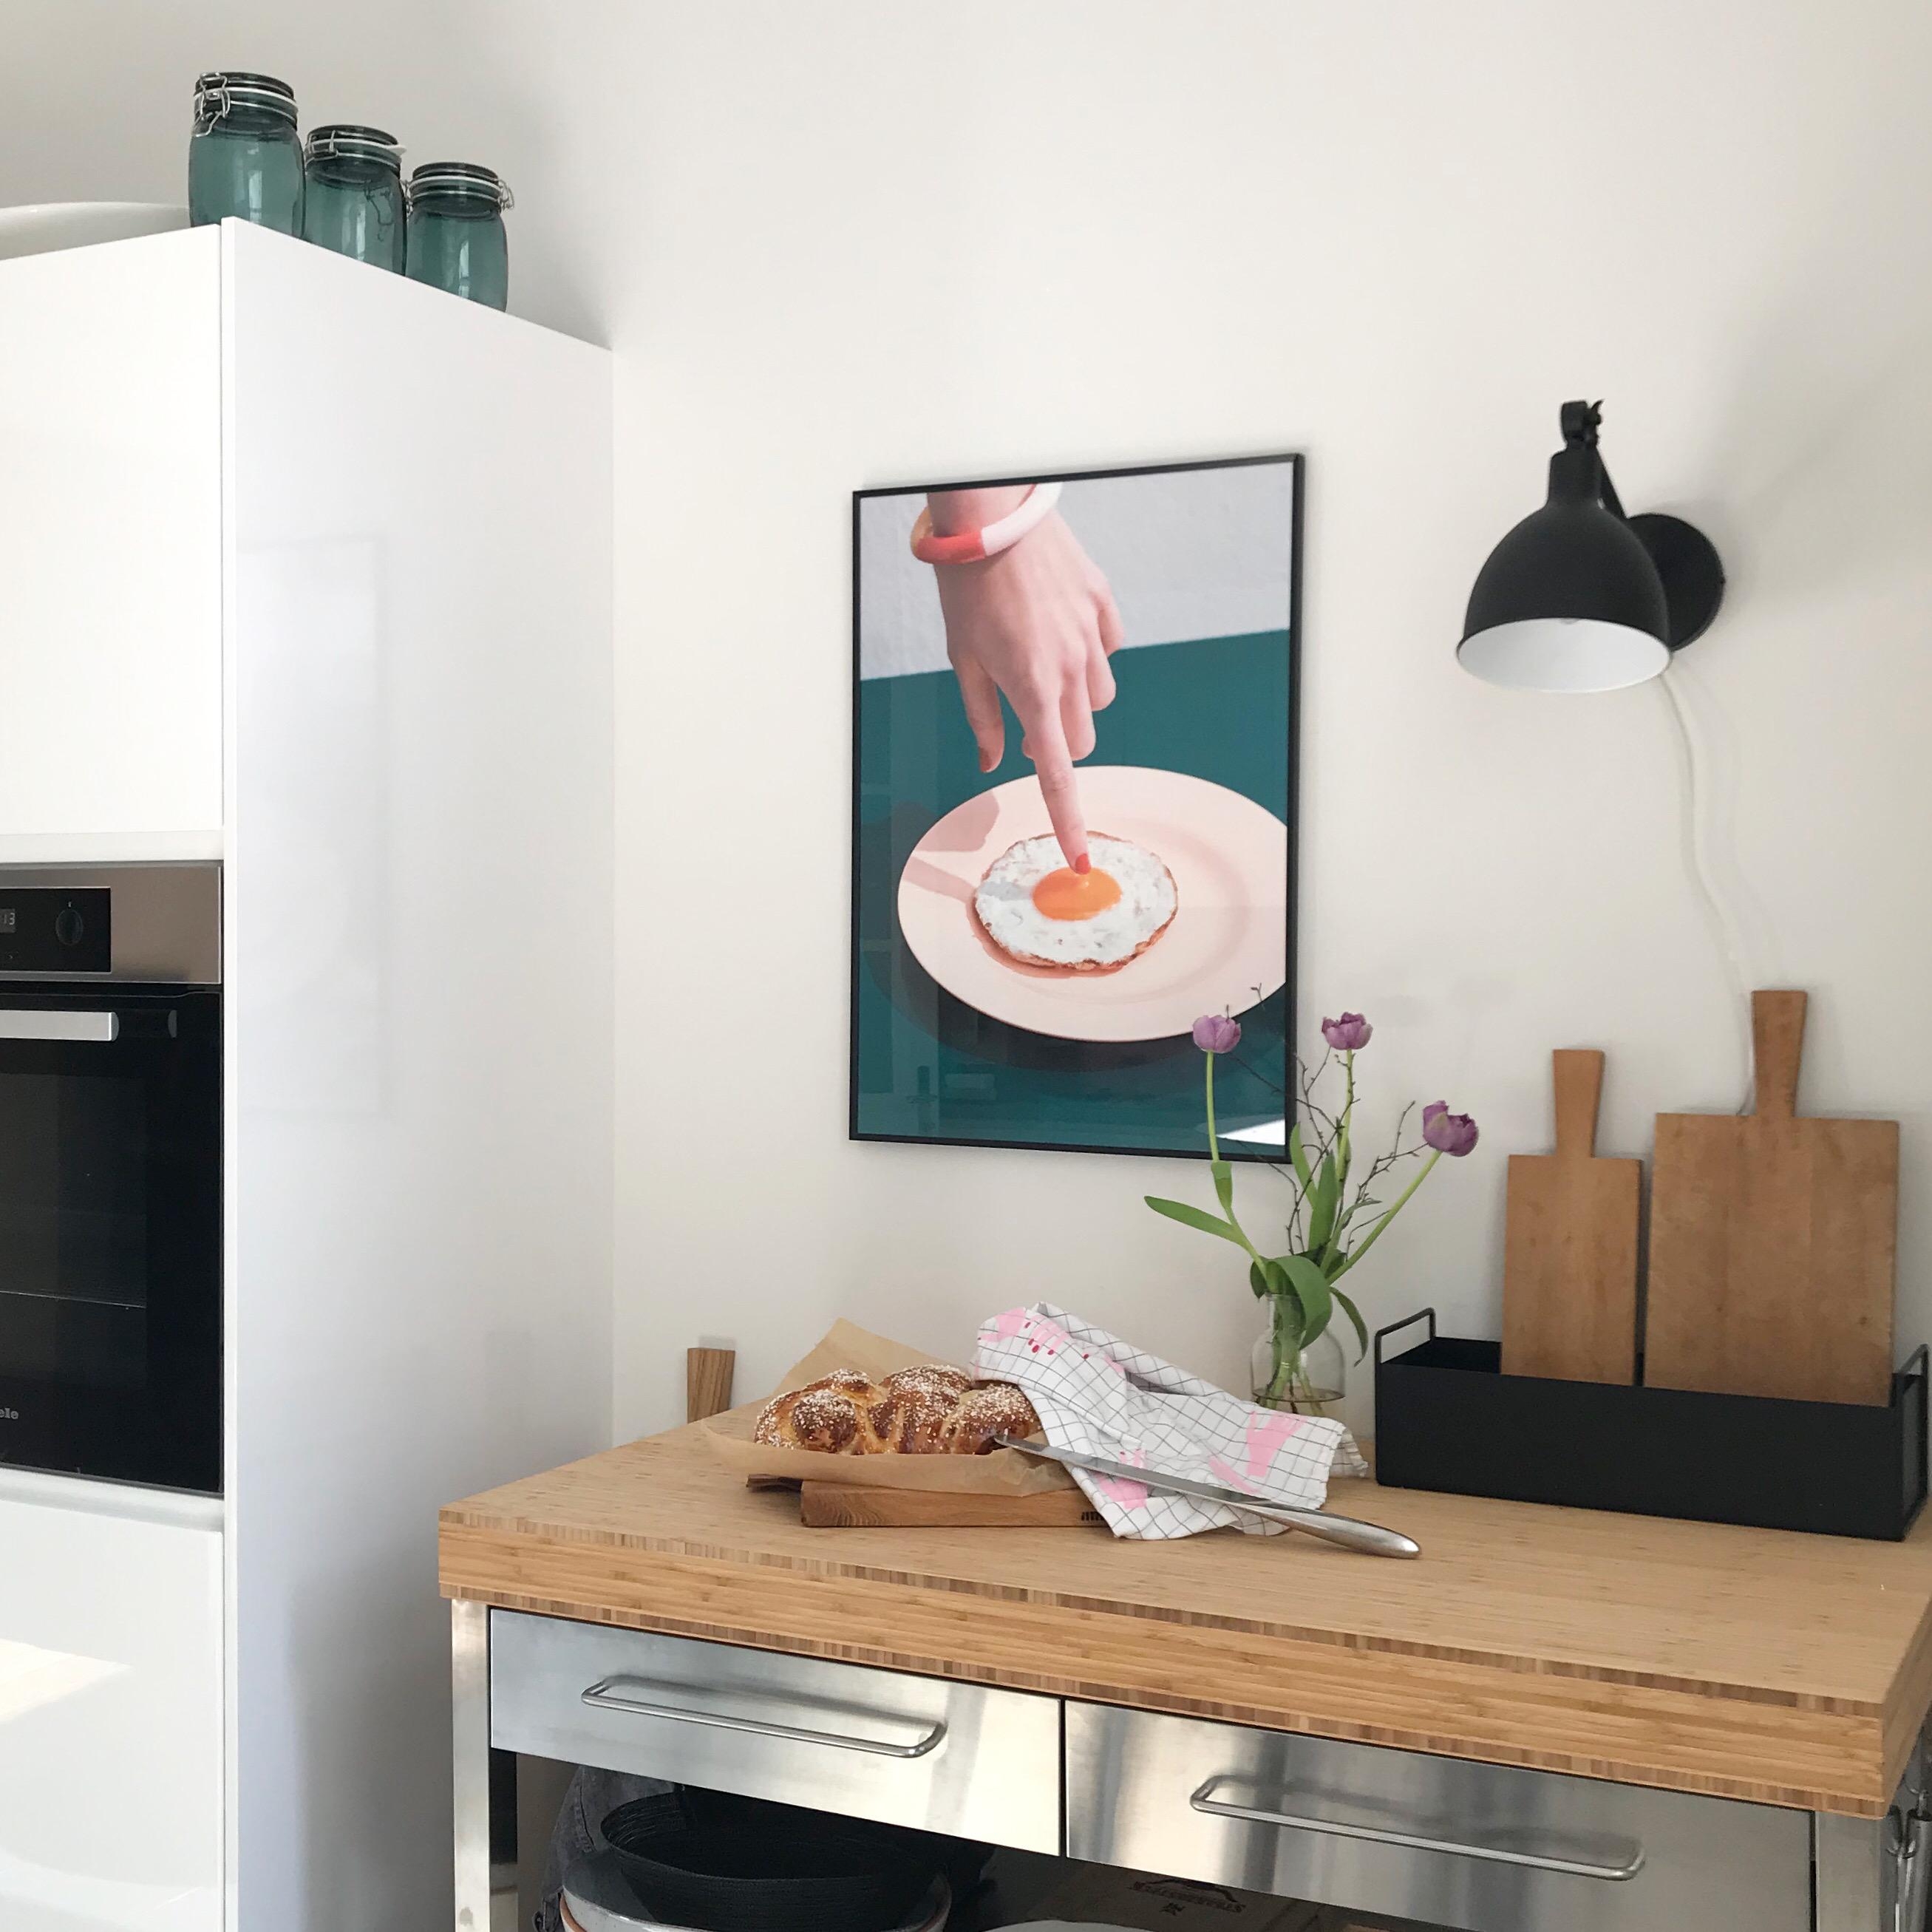 Was wäre #ostern ohne #osterzopf ? #scandistyle #kitchen #kitchendetails #interior #friedegg #altbau 